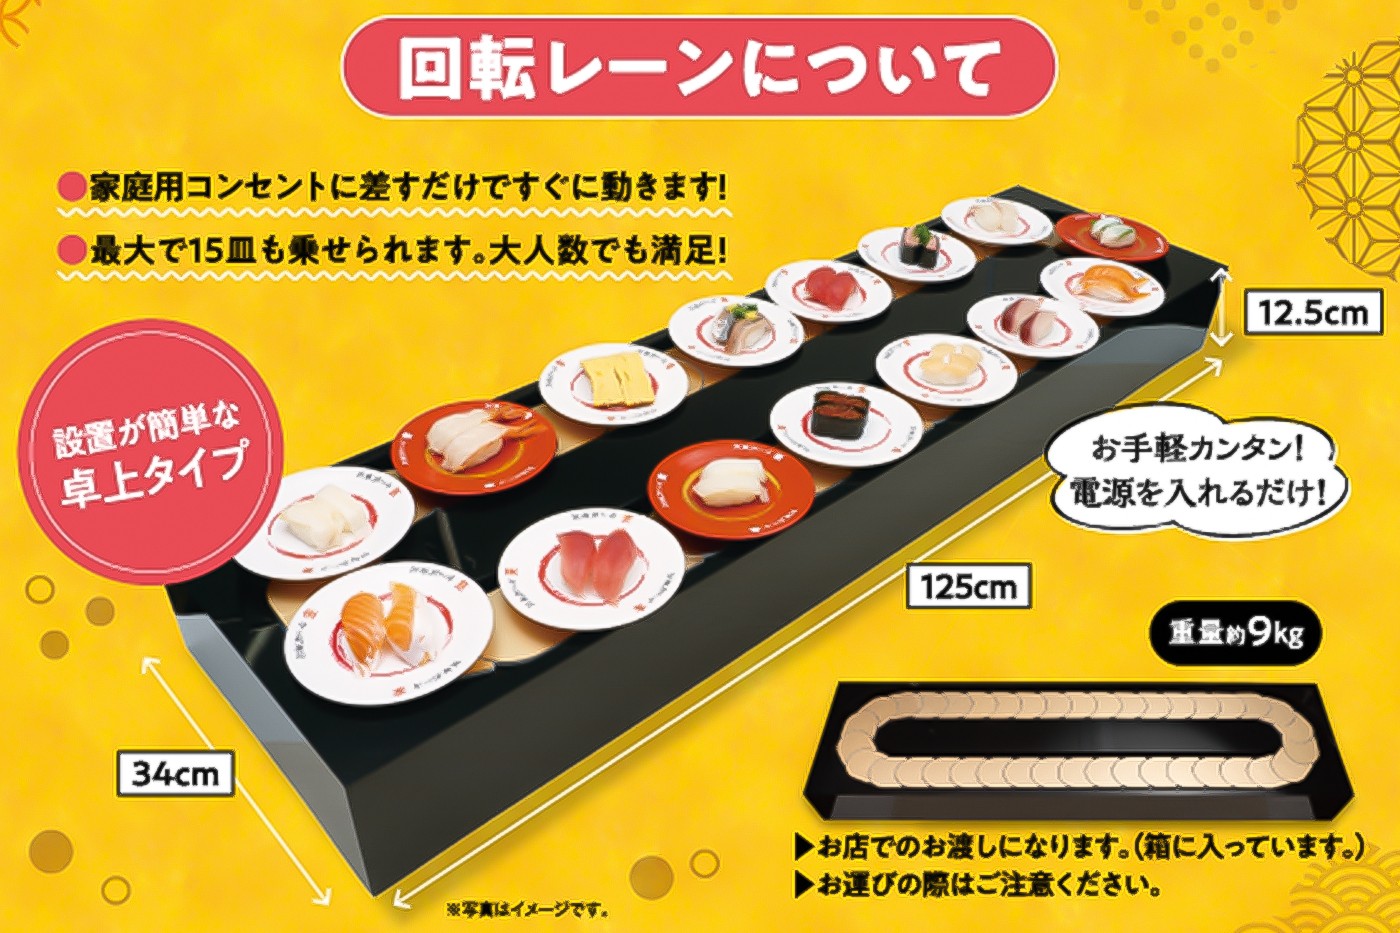 日本连锁回转寿司 Kappa Sushi 推出「出租输送带」服务